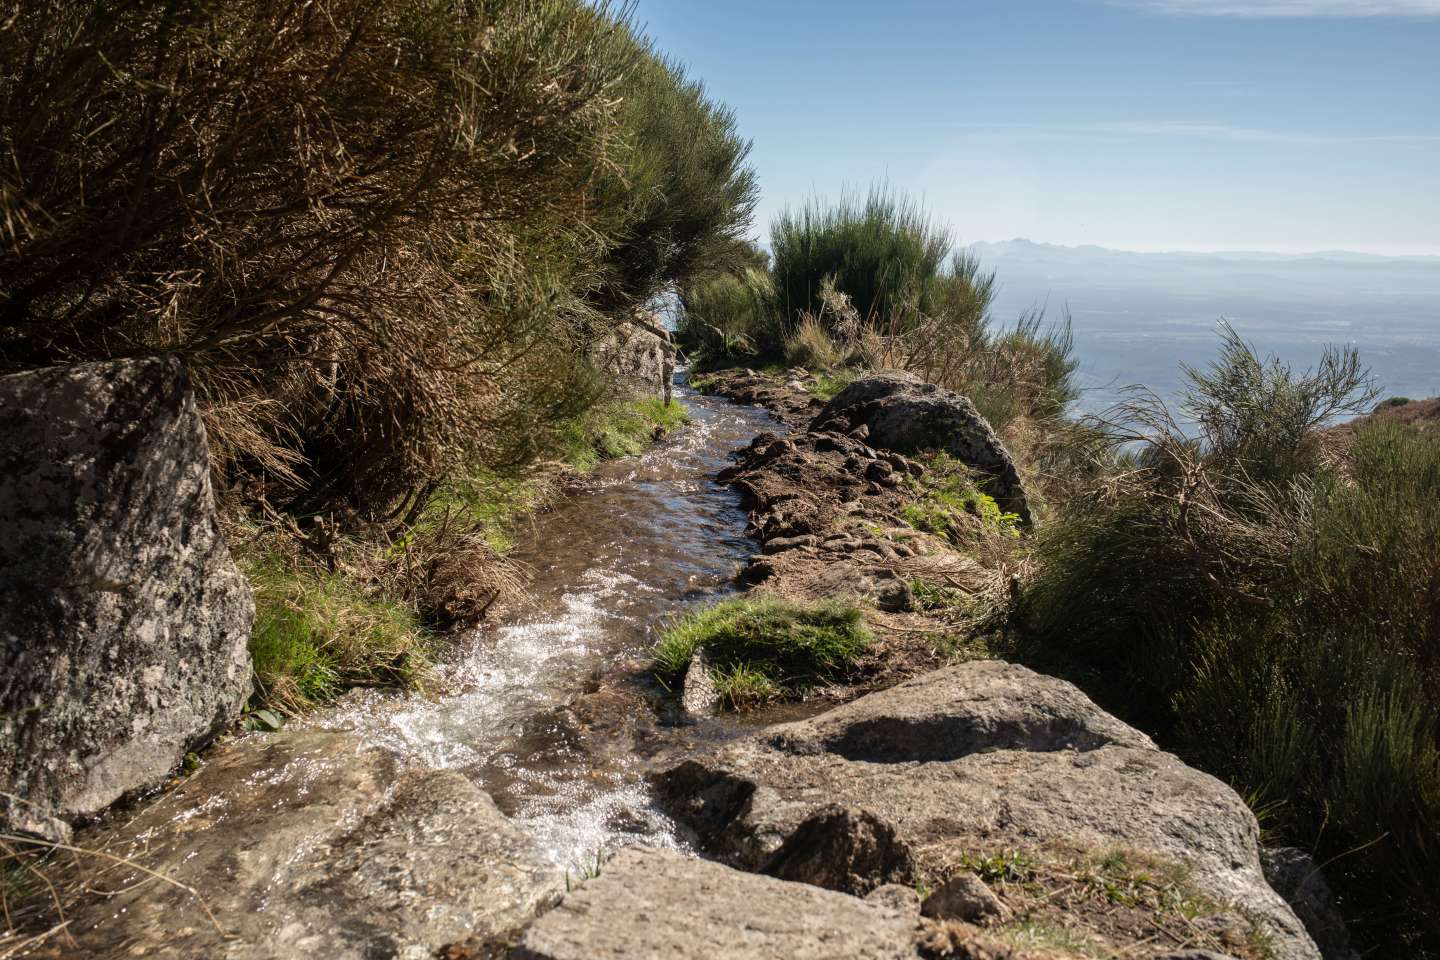 En Espagne, des canaux d’irrigation médiévaux remis en état pour lutter contre la sécheresse